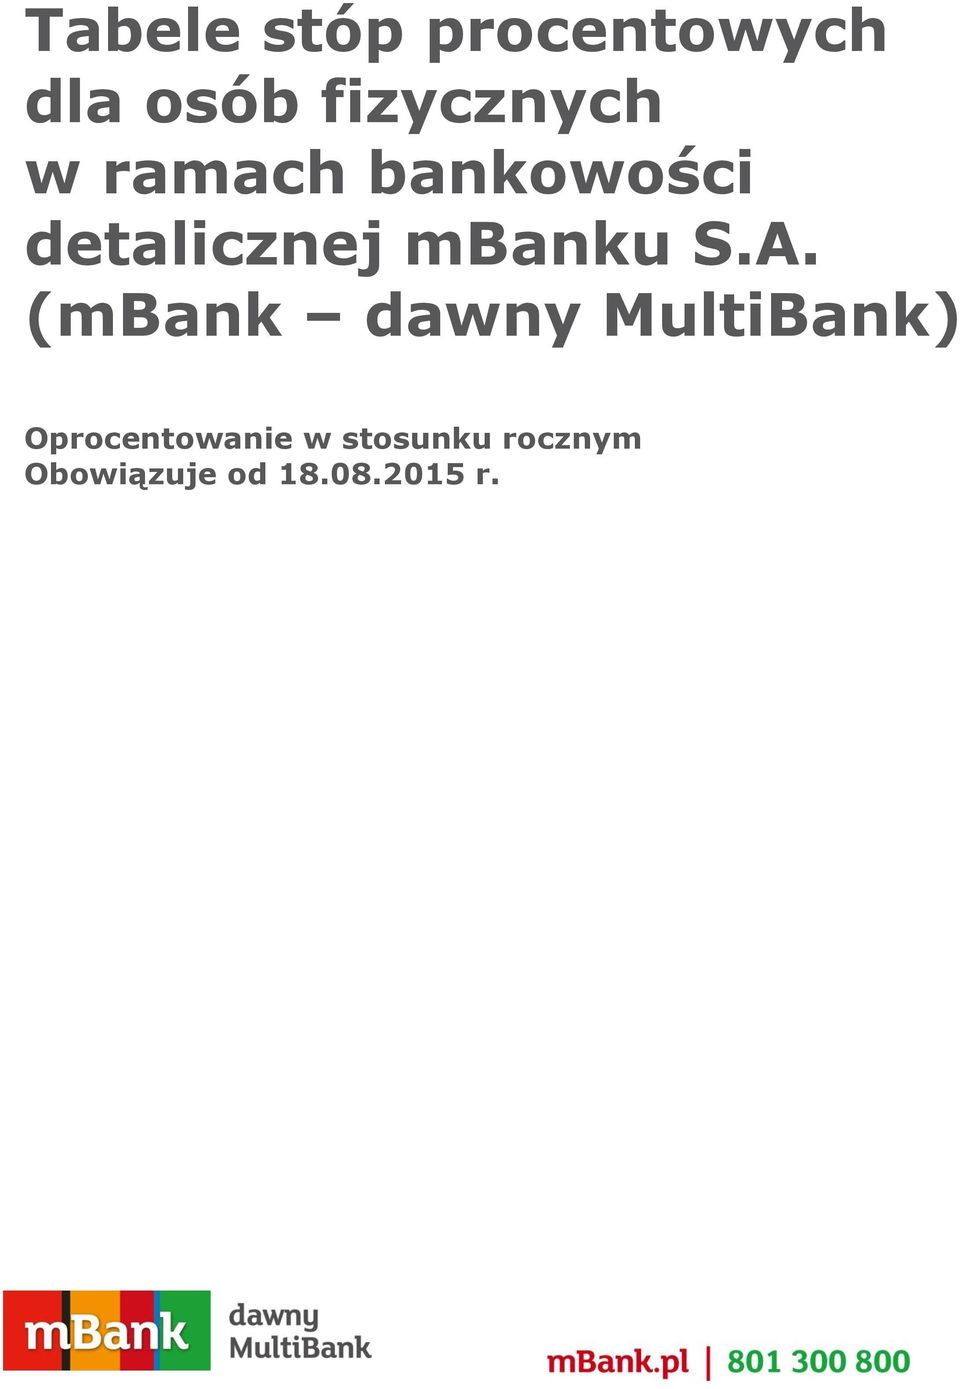 detalicznej mbanku S.A.